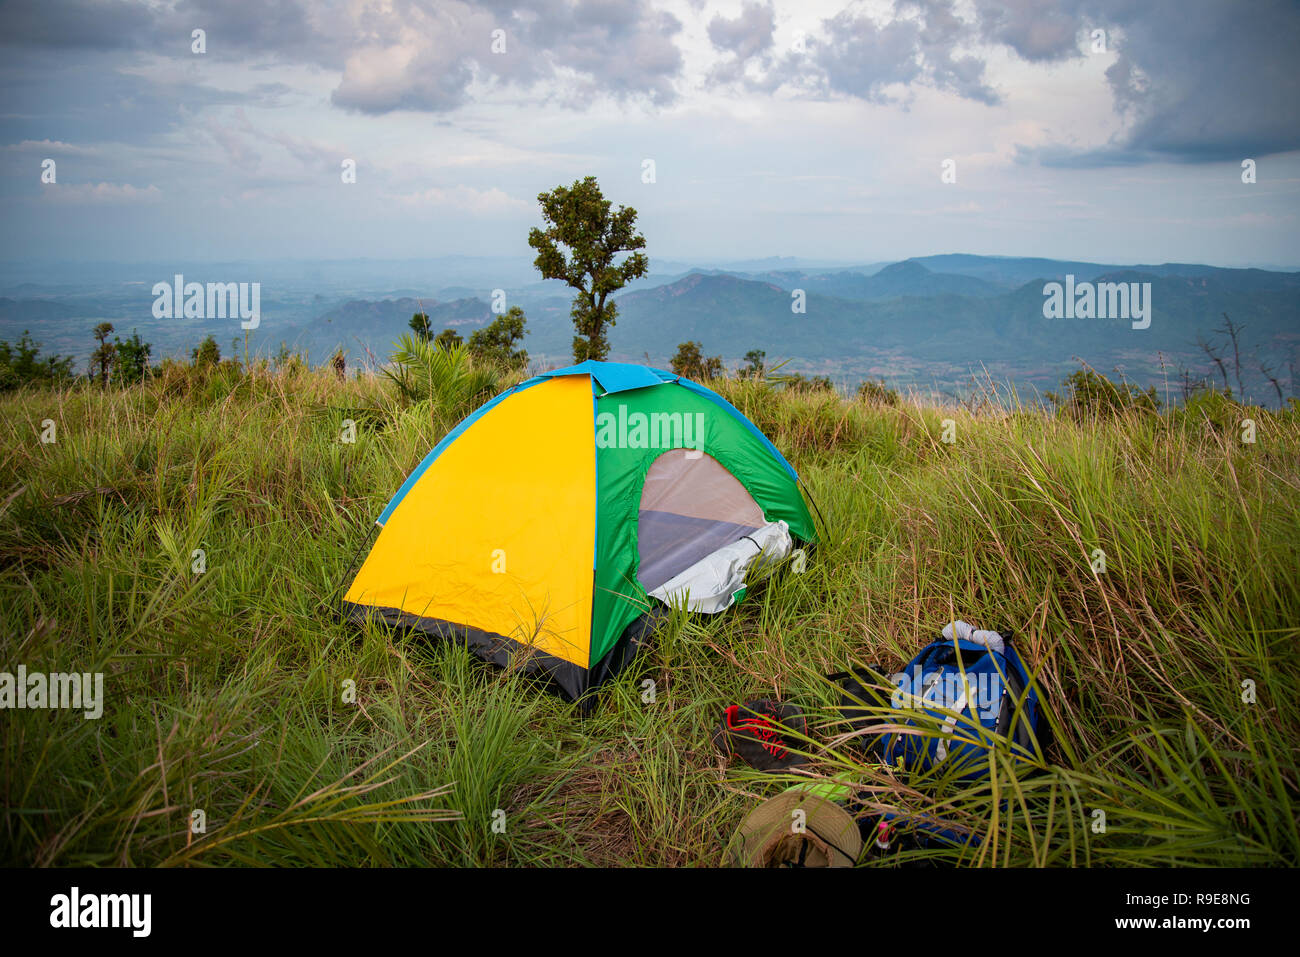 Les zones sur sunset hill tente / Randonnées colorées tente de camping sur  terrain vert gazon et d'emballage sac à dos sur le paysage de montagne -  salon camping Tentes yell Photo